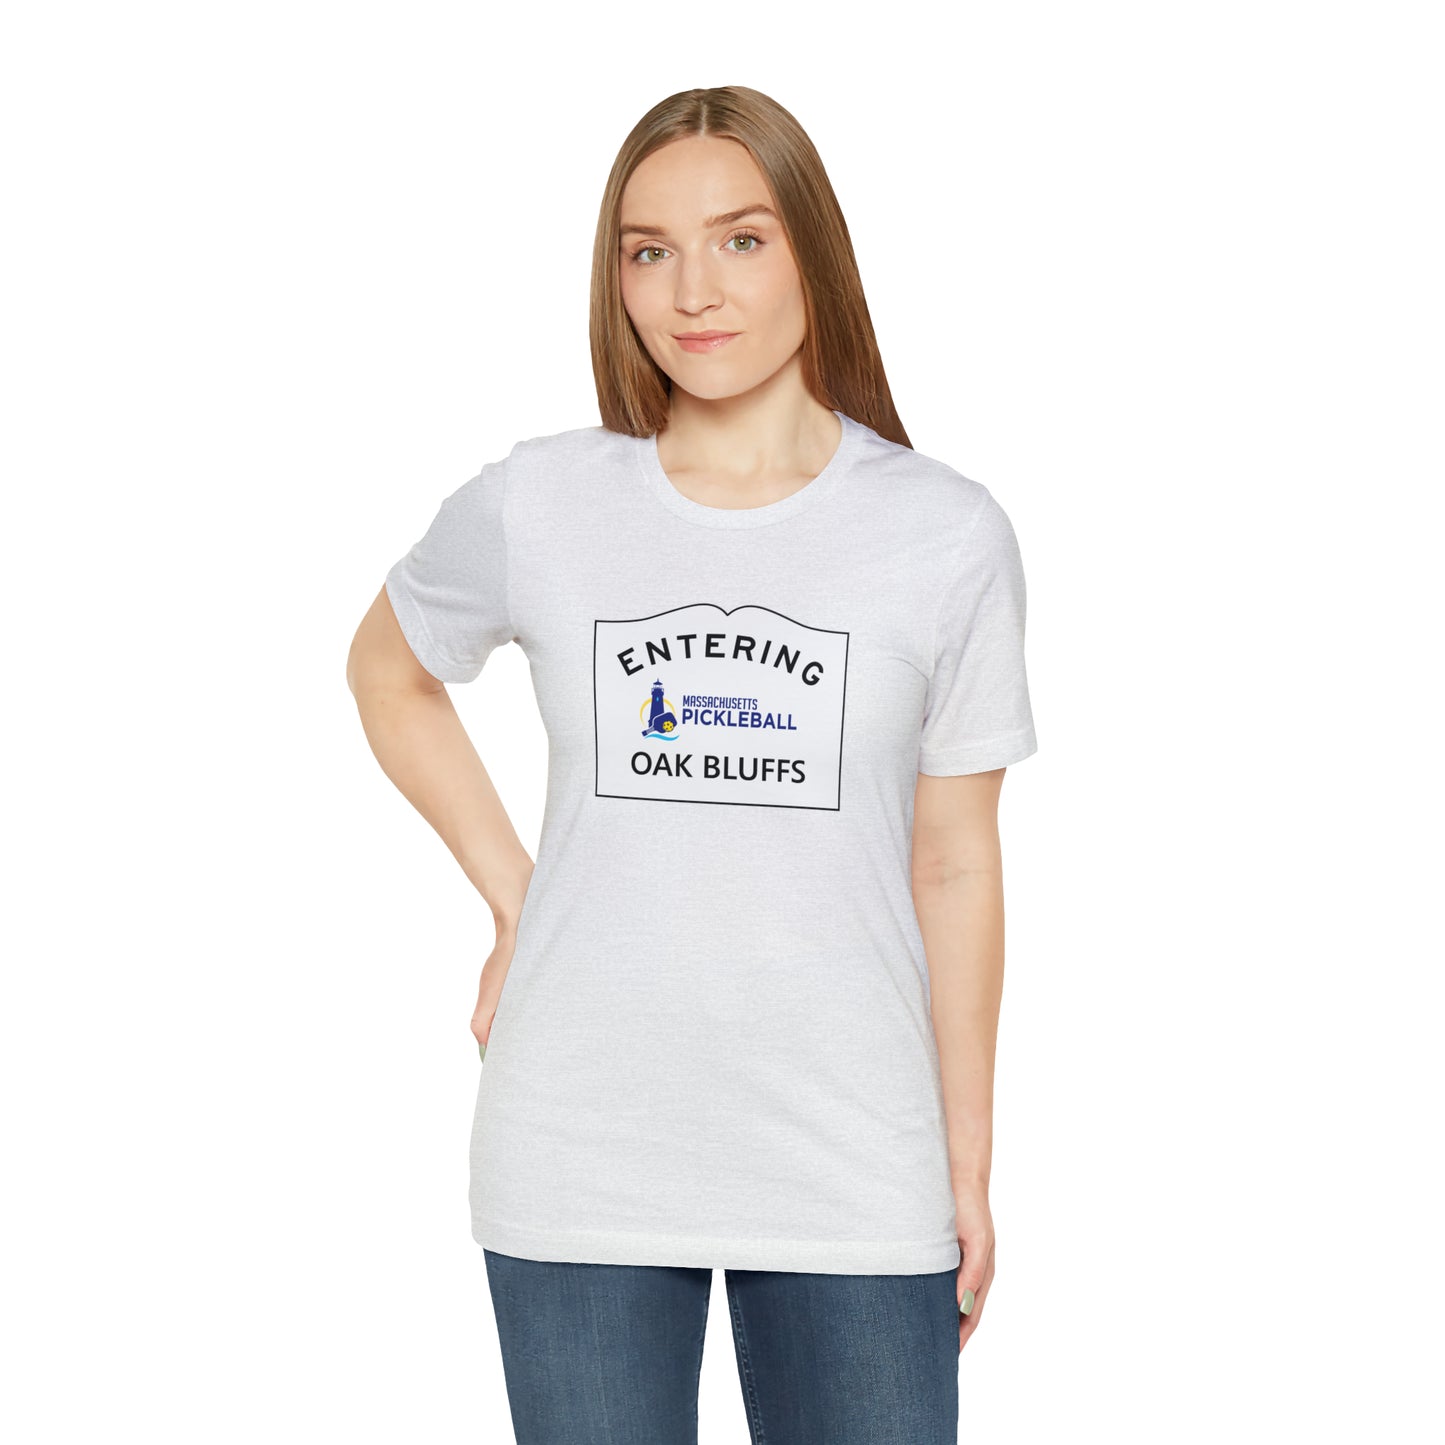 Oak Bluffs, Mass Pickleball Short Sleeve T-Shirt